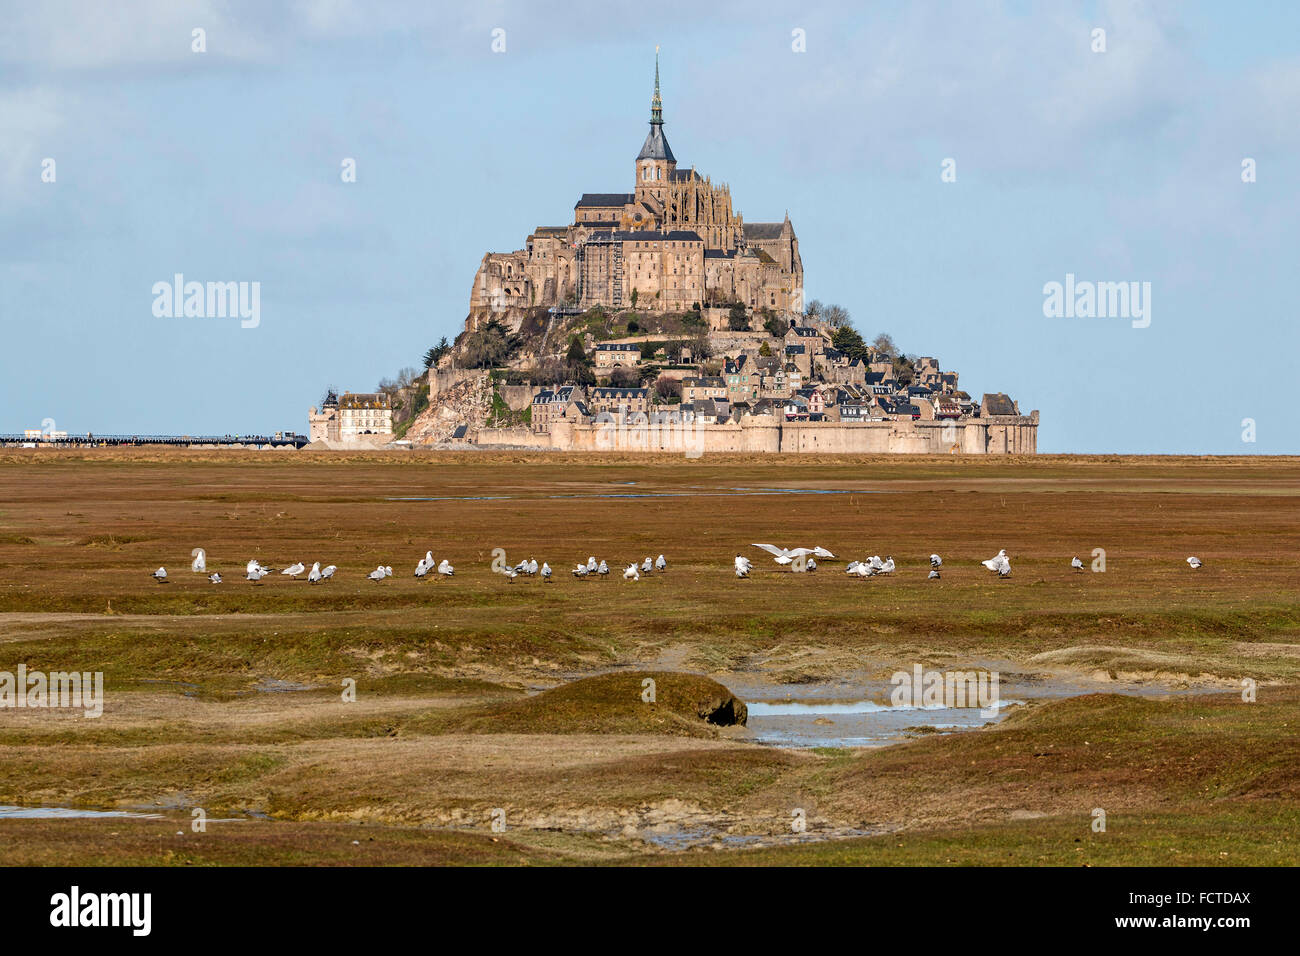 Mont Saint-Michel (Saint Michael's Mount), (Normandie, nord-ouest de la France) : Mont Saint-Michel vue des marais salants. Banque D'Images